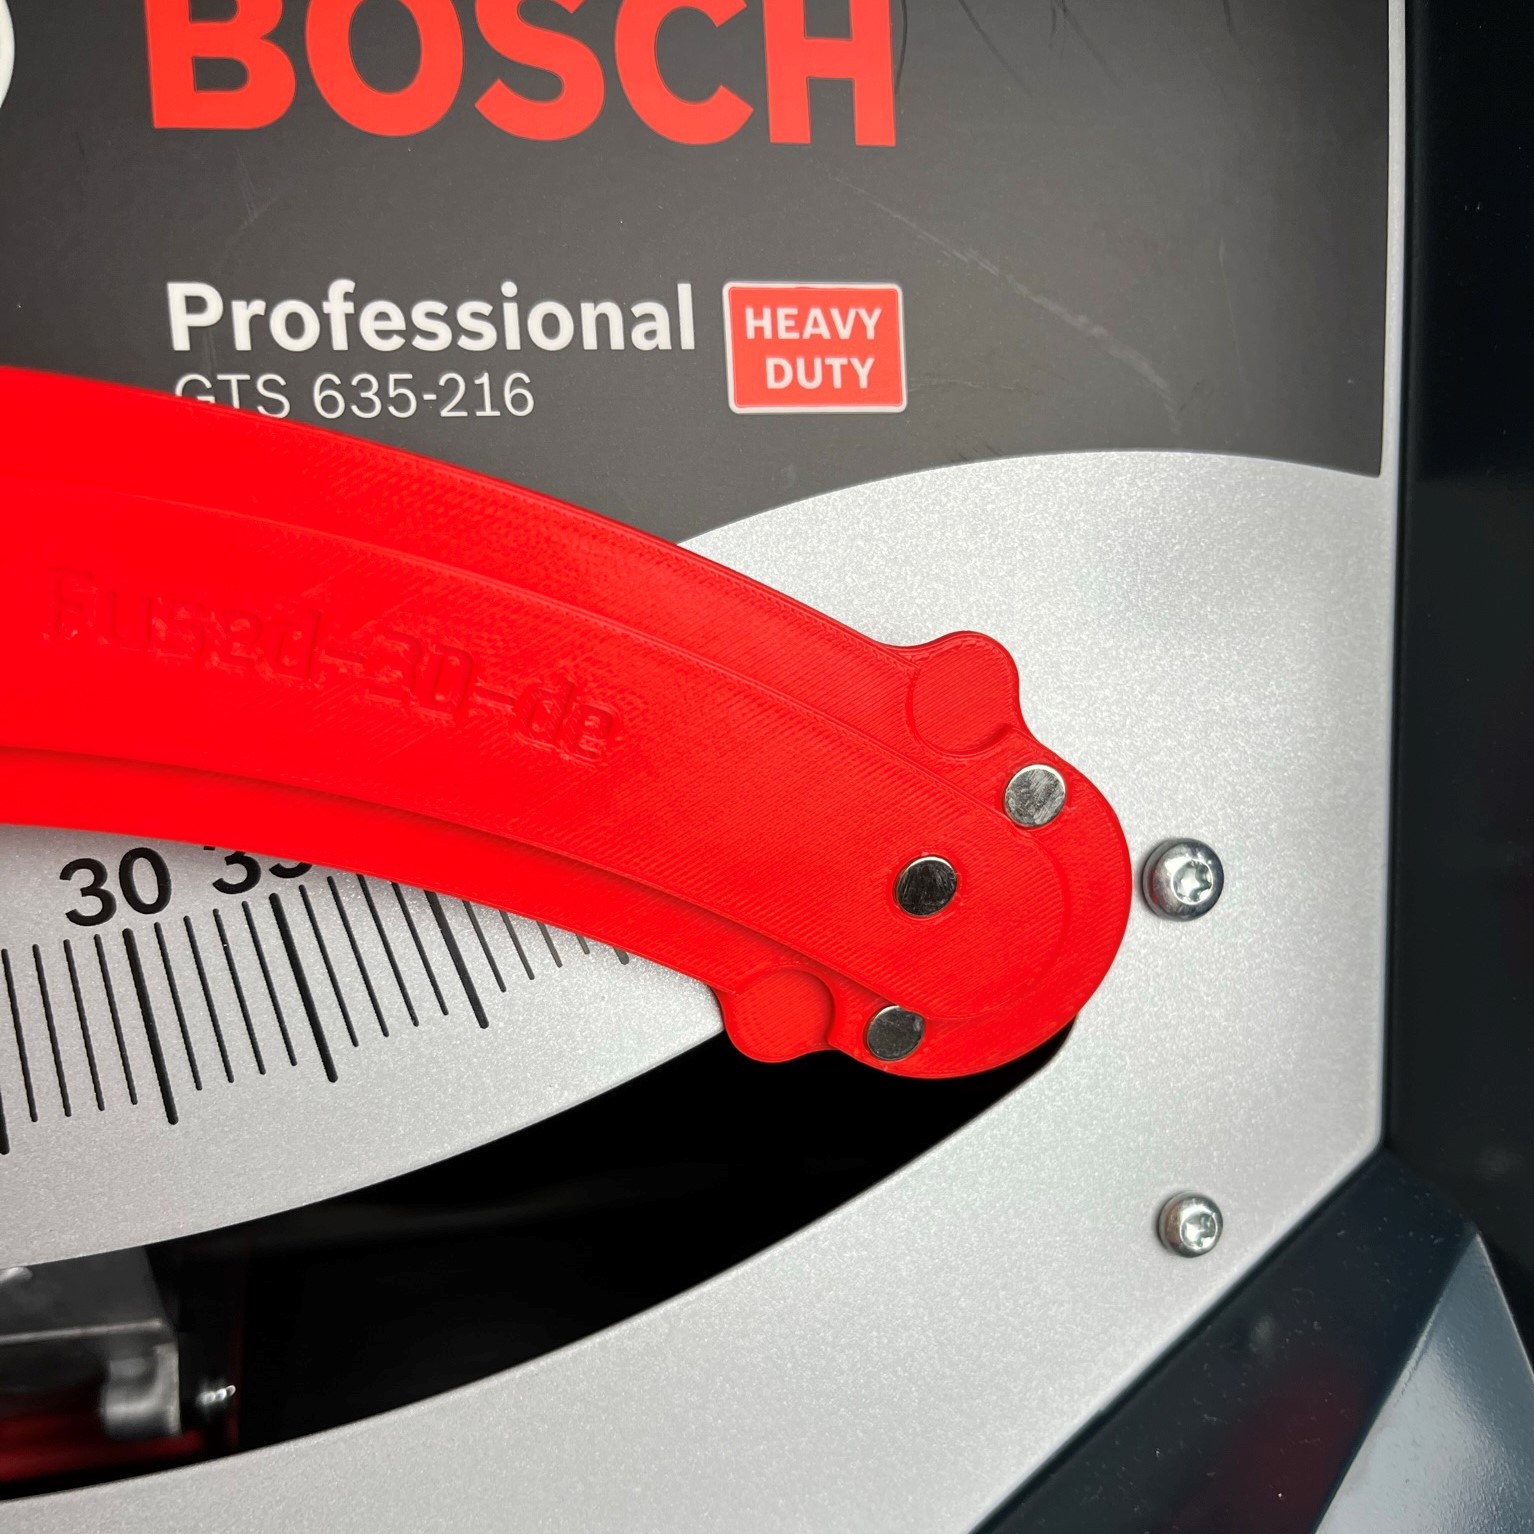 Unser neustes Bosch GTS 635 216 Zubehör: 635-215 Abdeckung Winkelverstellung